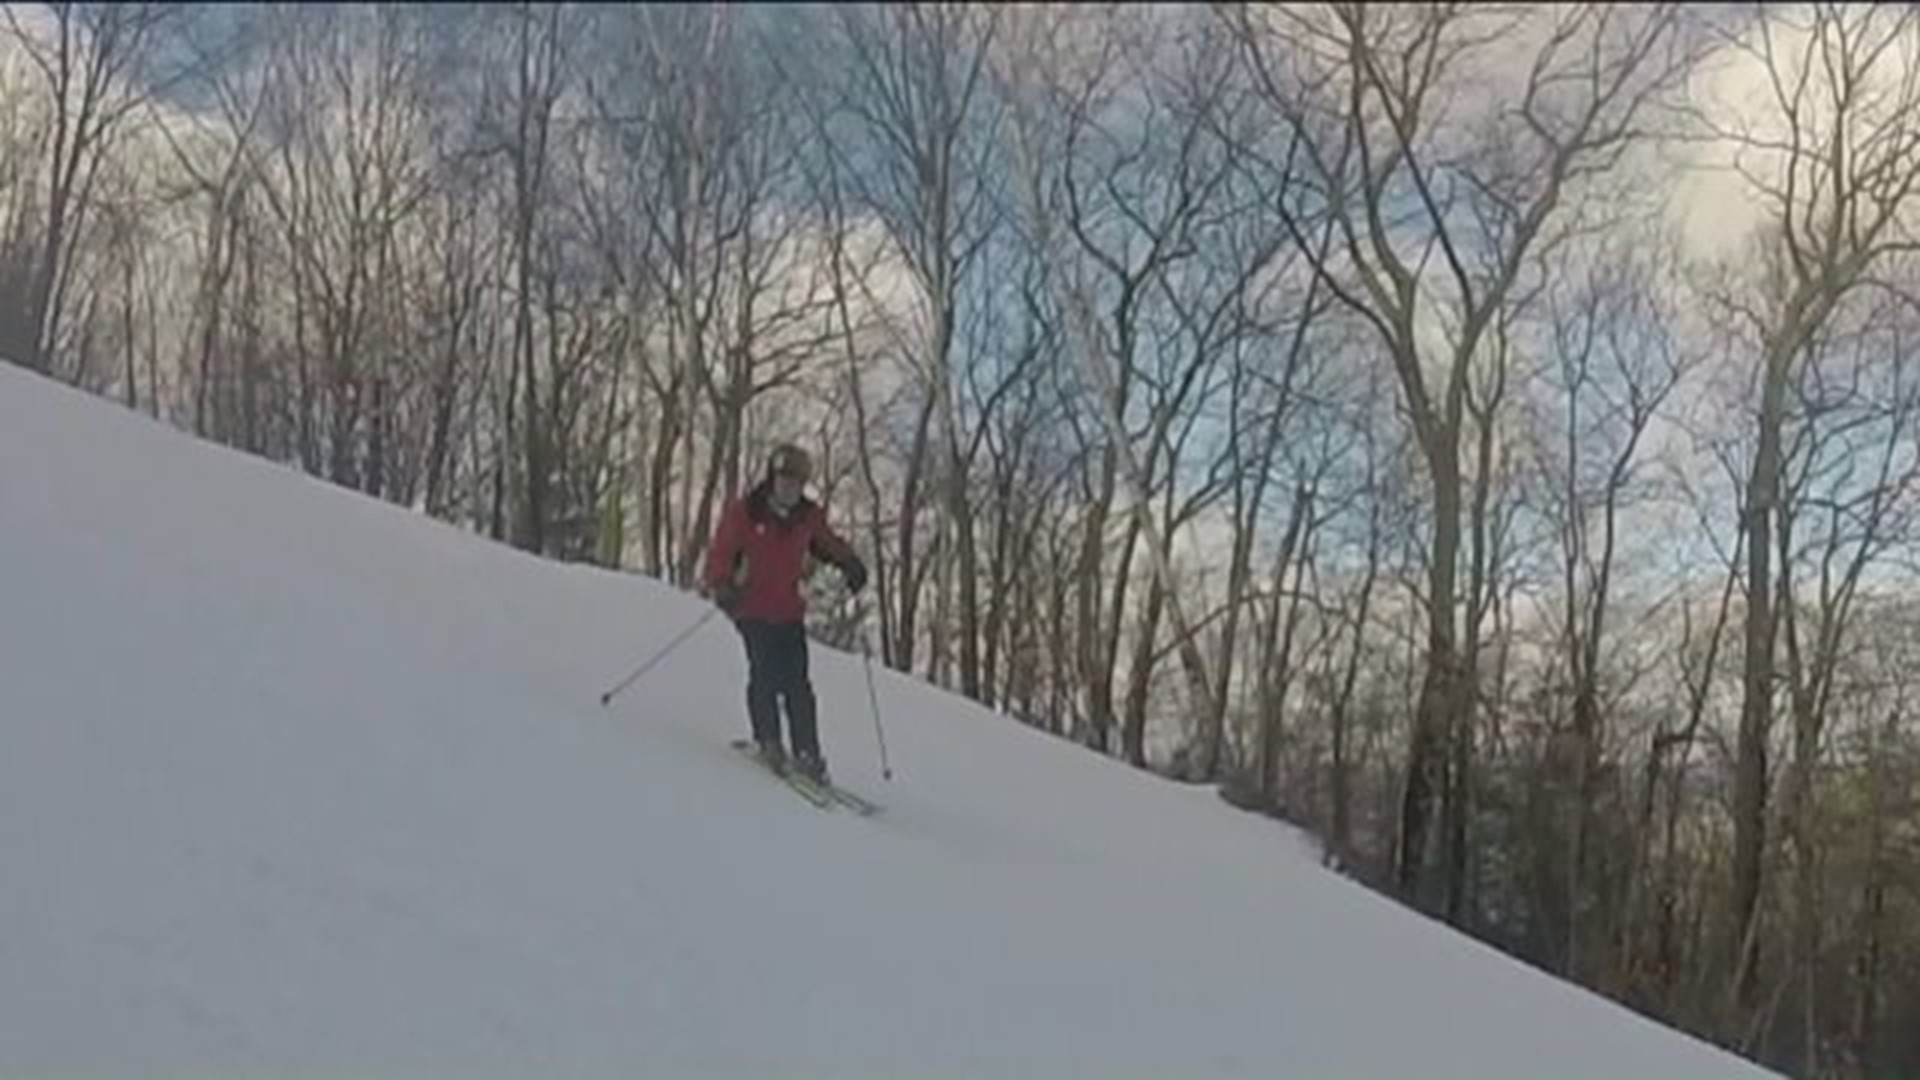 Warm weather slows ski area business